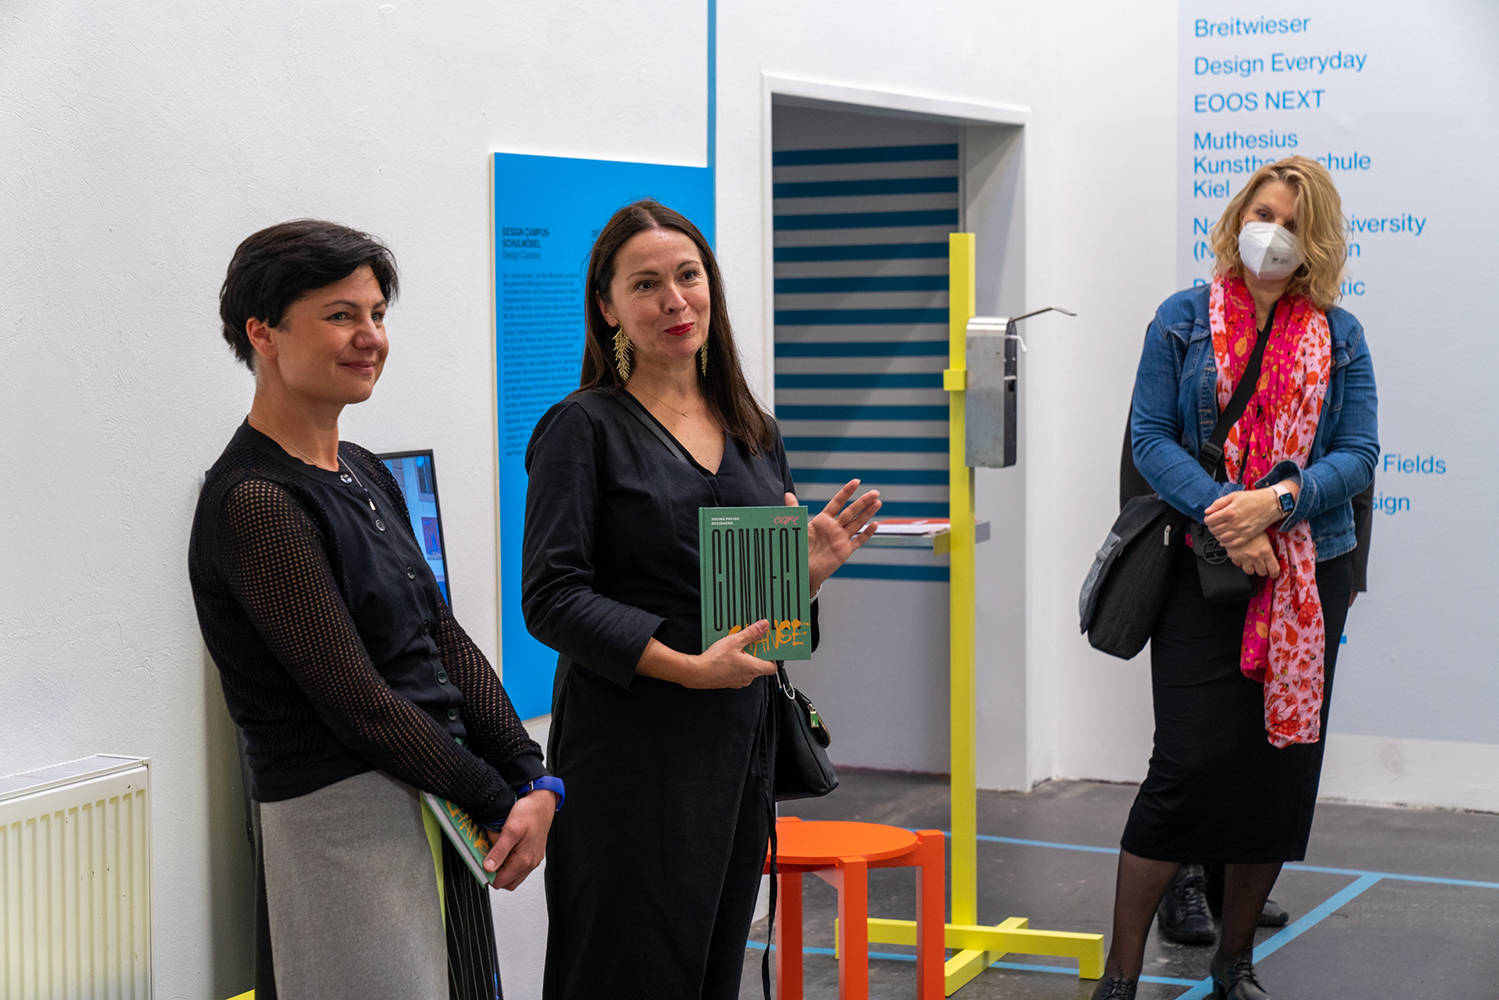 W kadrze trzy kobiety, stojące pośród eksponatów, plansz informacyjnych i napisów umieszczonych błękitnym drukiem bezpośrednio na białej ścianie. Środkową pozycję zajmuje kobieta w czarnej sukience, trzymająca przed sobą zielony katalog z napisem CONNECT i przemawiająca do zebranych